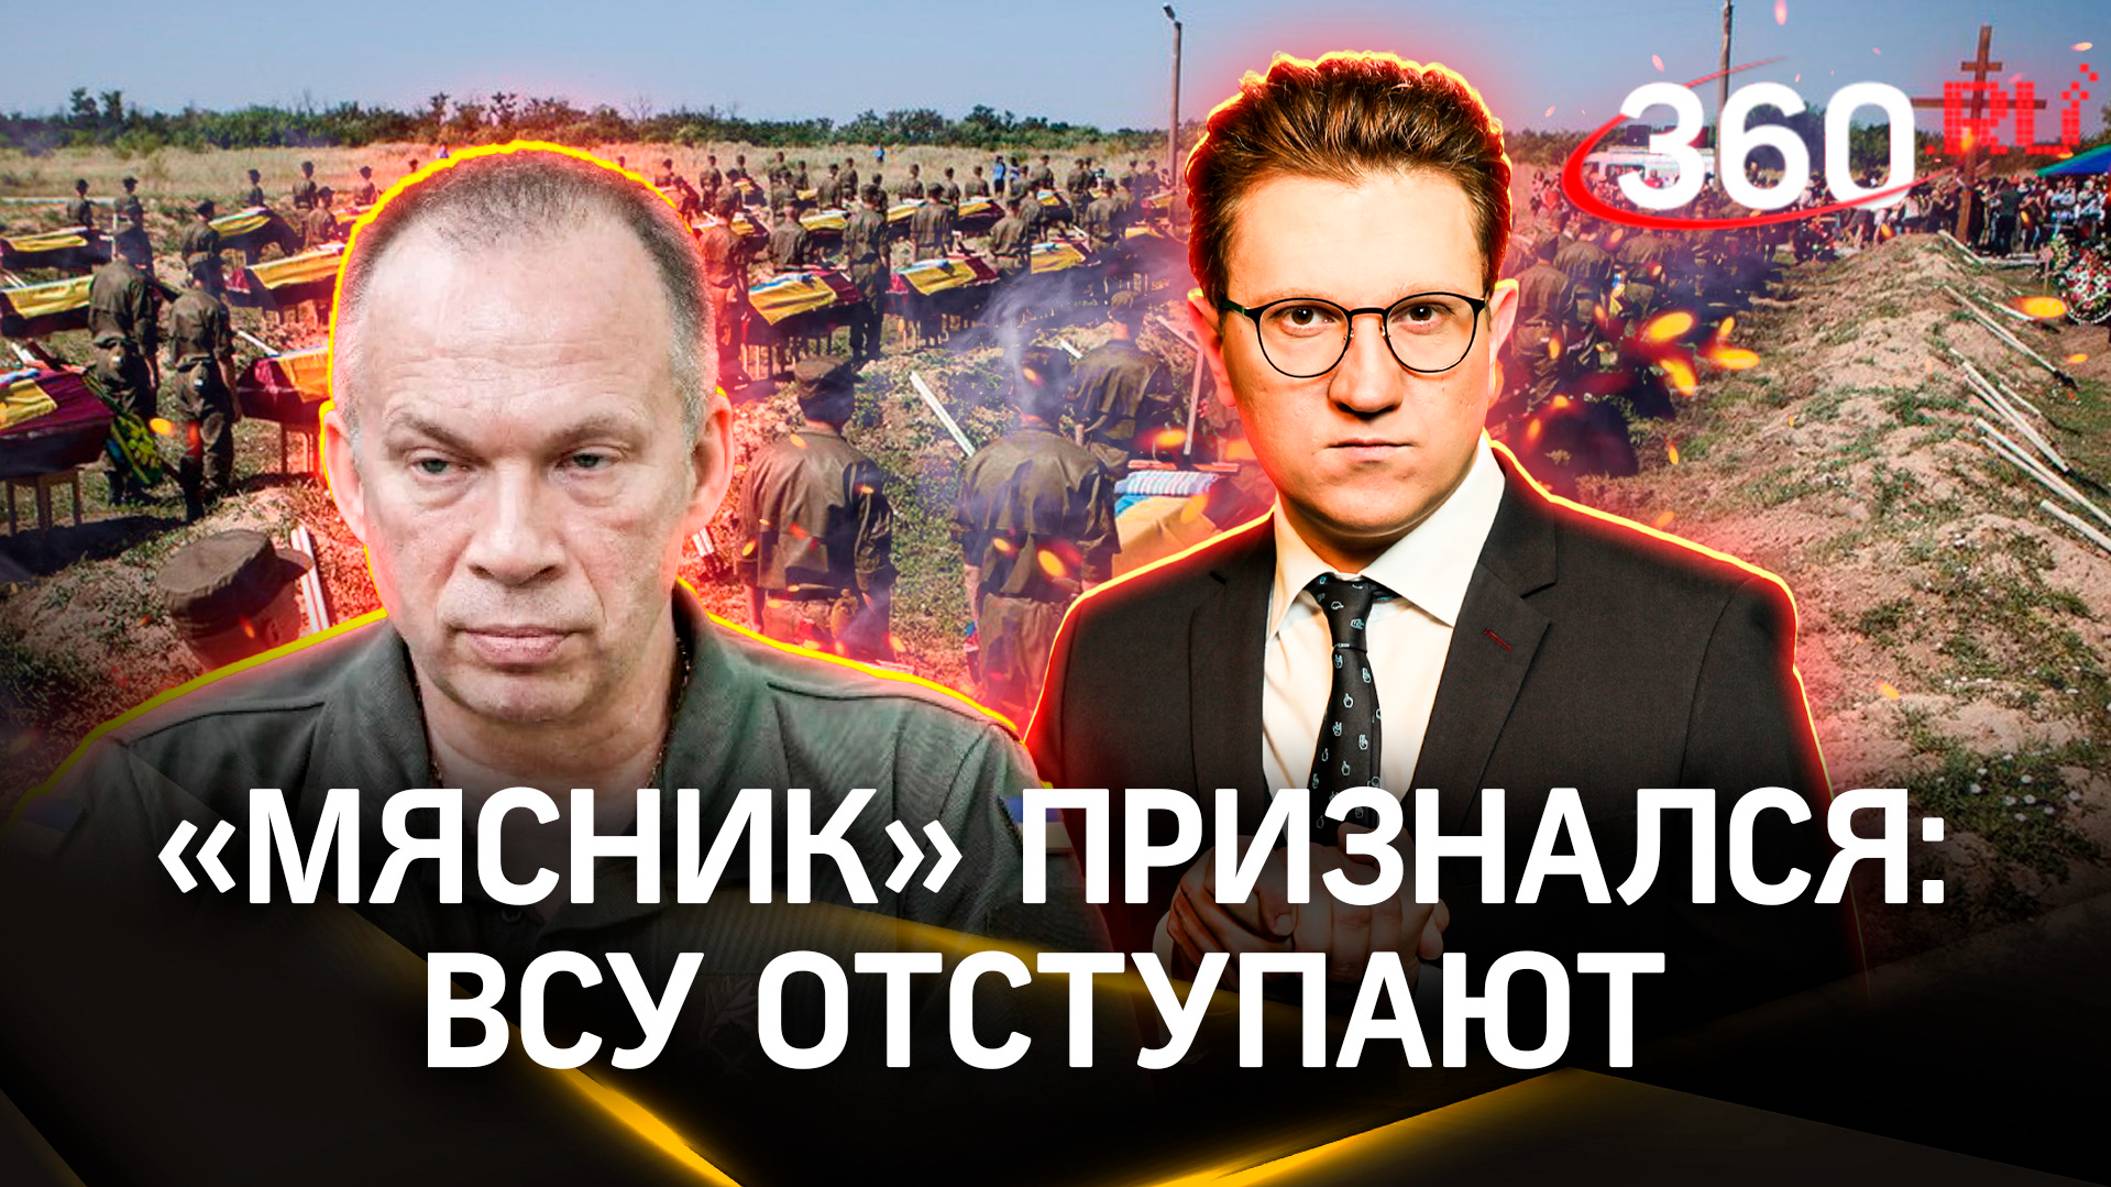 ВСУ разбиты под Славянском, а «Генерал 200» Сырский рассказывает про победу Украины